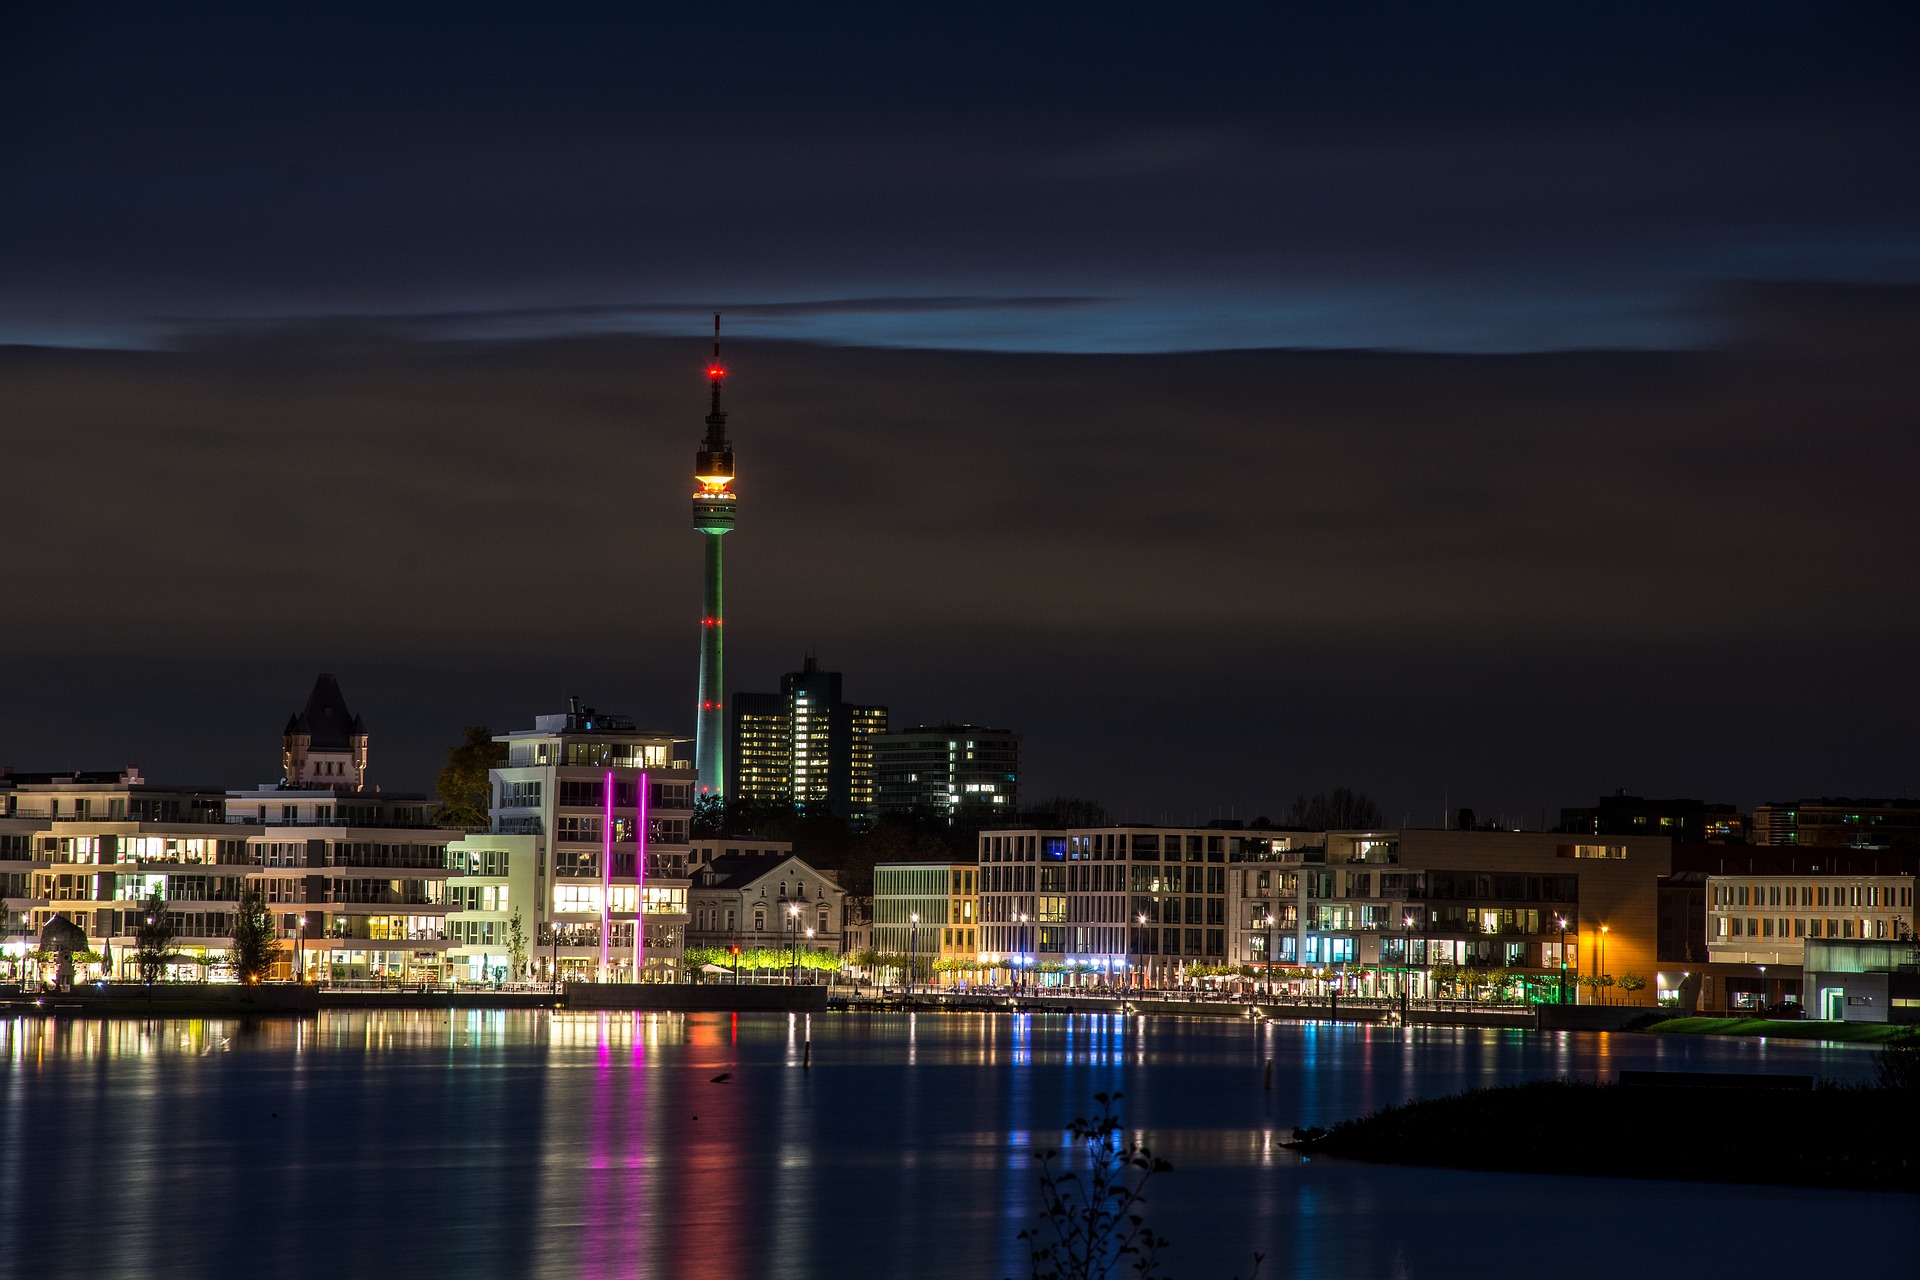 GBMpic_ Skyline der Stadt bei Nacht mit einem beleuchteten Turm, der sich im Wasser spiegelt.